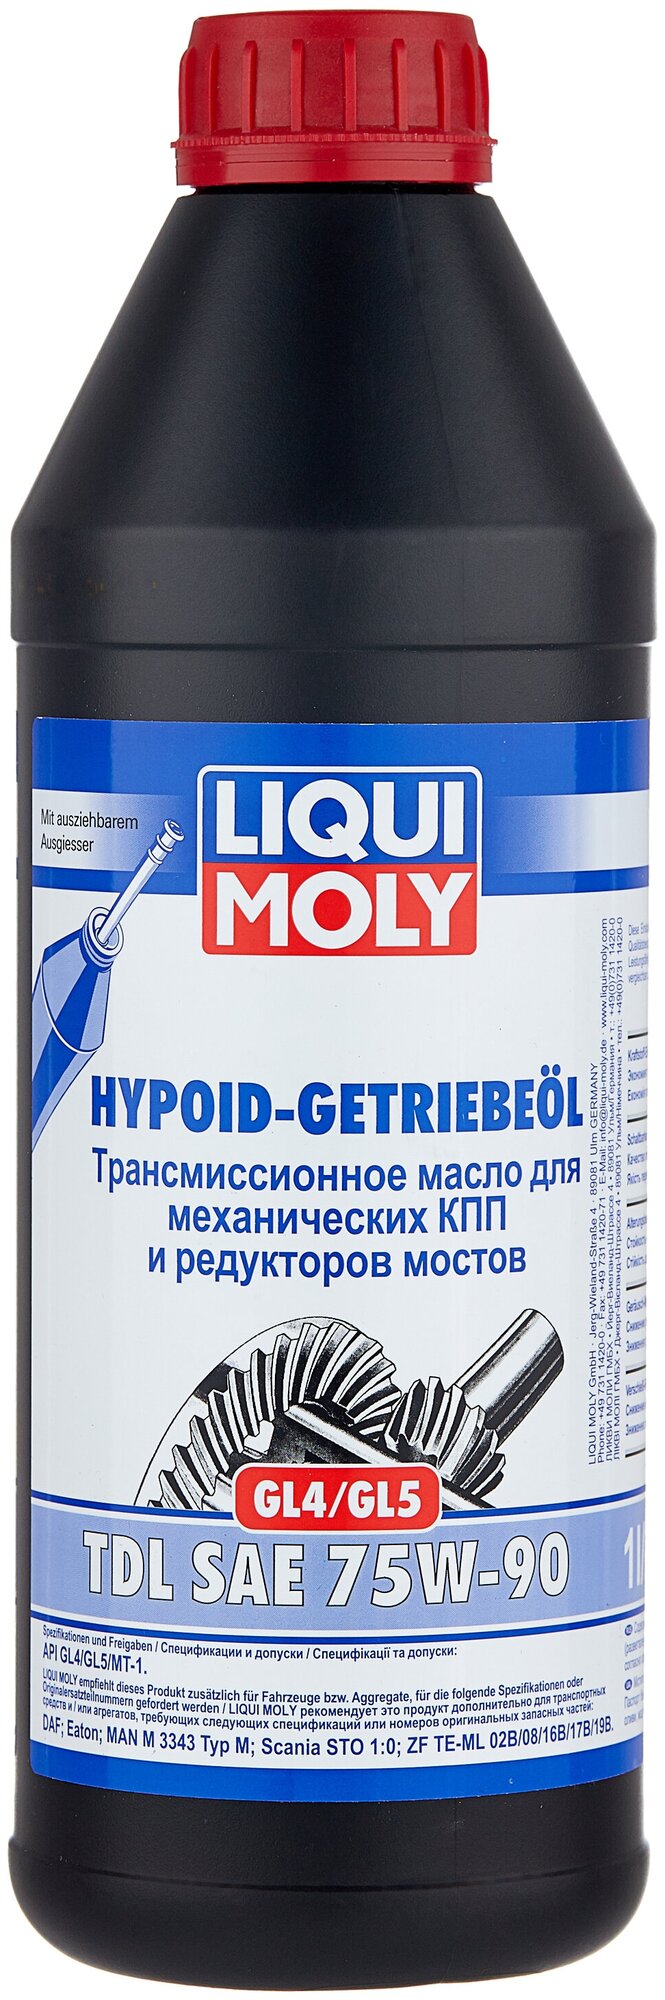 Масло трансмиссионное LIQUI MOLY Hypoid-Getriebeoil TDL 75W-90